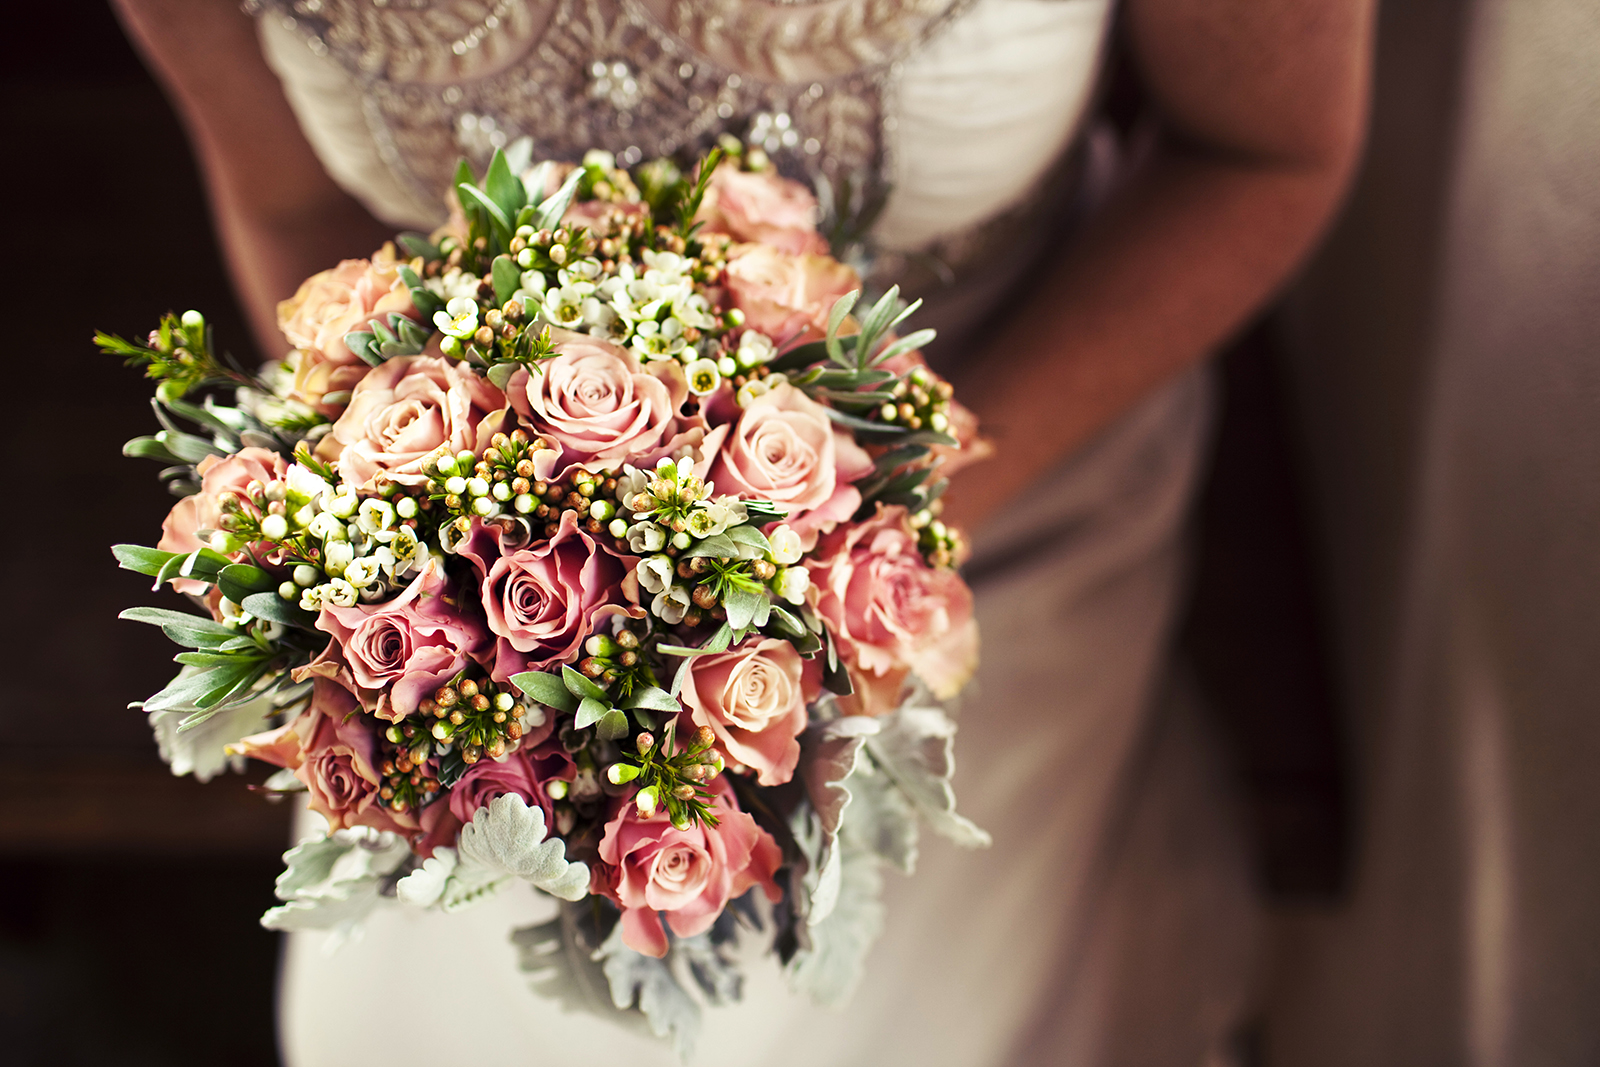 Какие есть варианты красивых и интересных идеи оформления свадебного букета с бирюзой Фото шикарных бело-бирюзовых букетов невесты на свадьбе